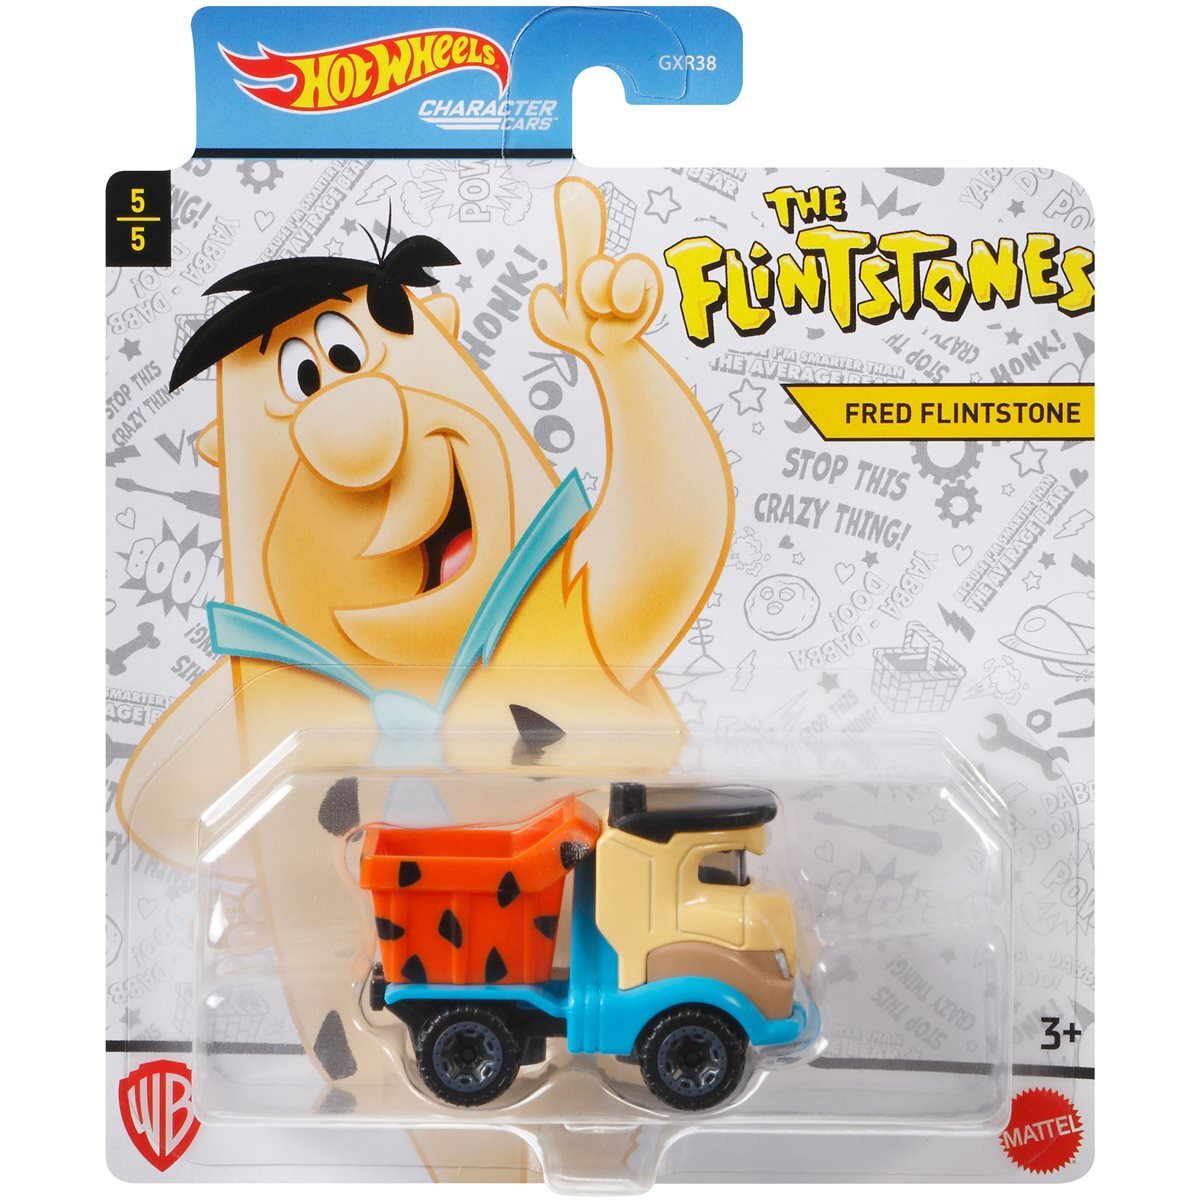 Hot Wheels Character Cars The Flintstones - Fred Flintstone